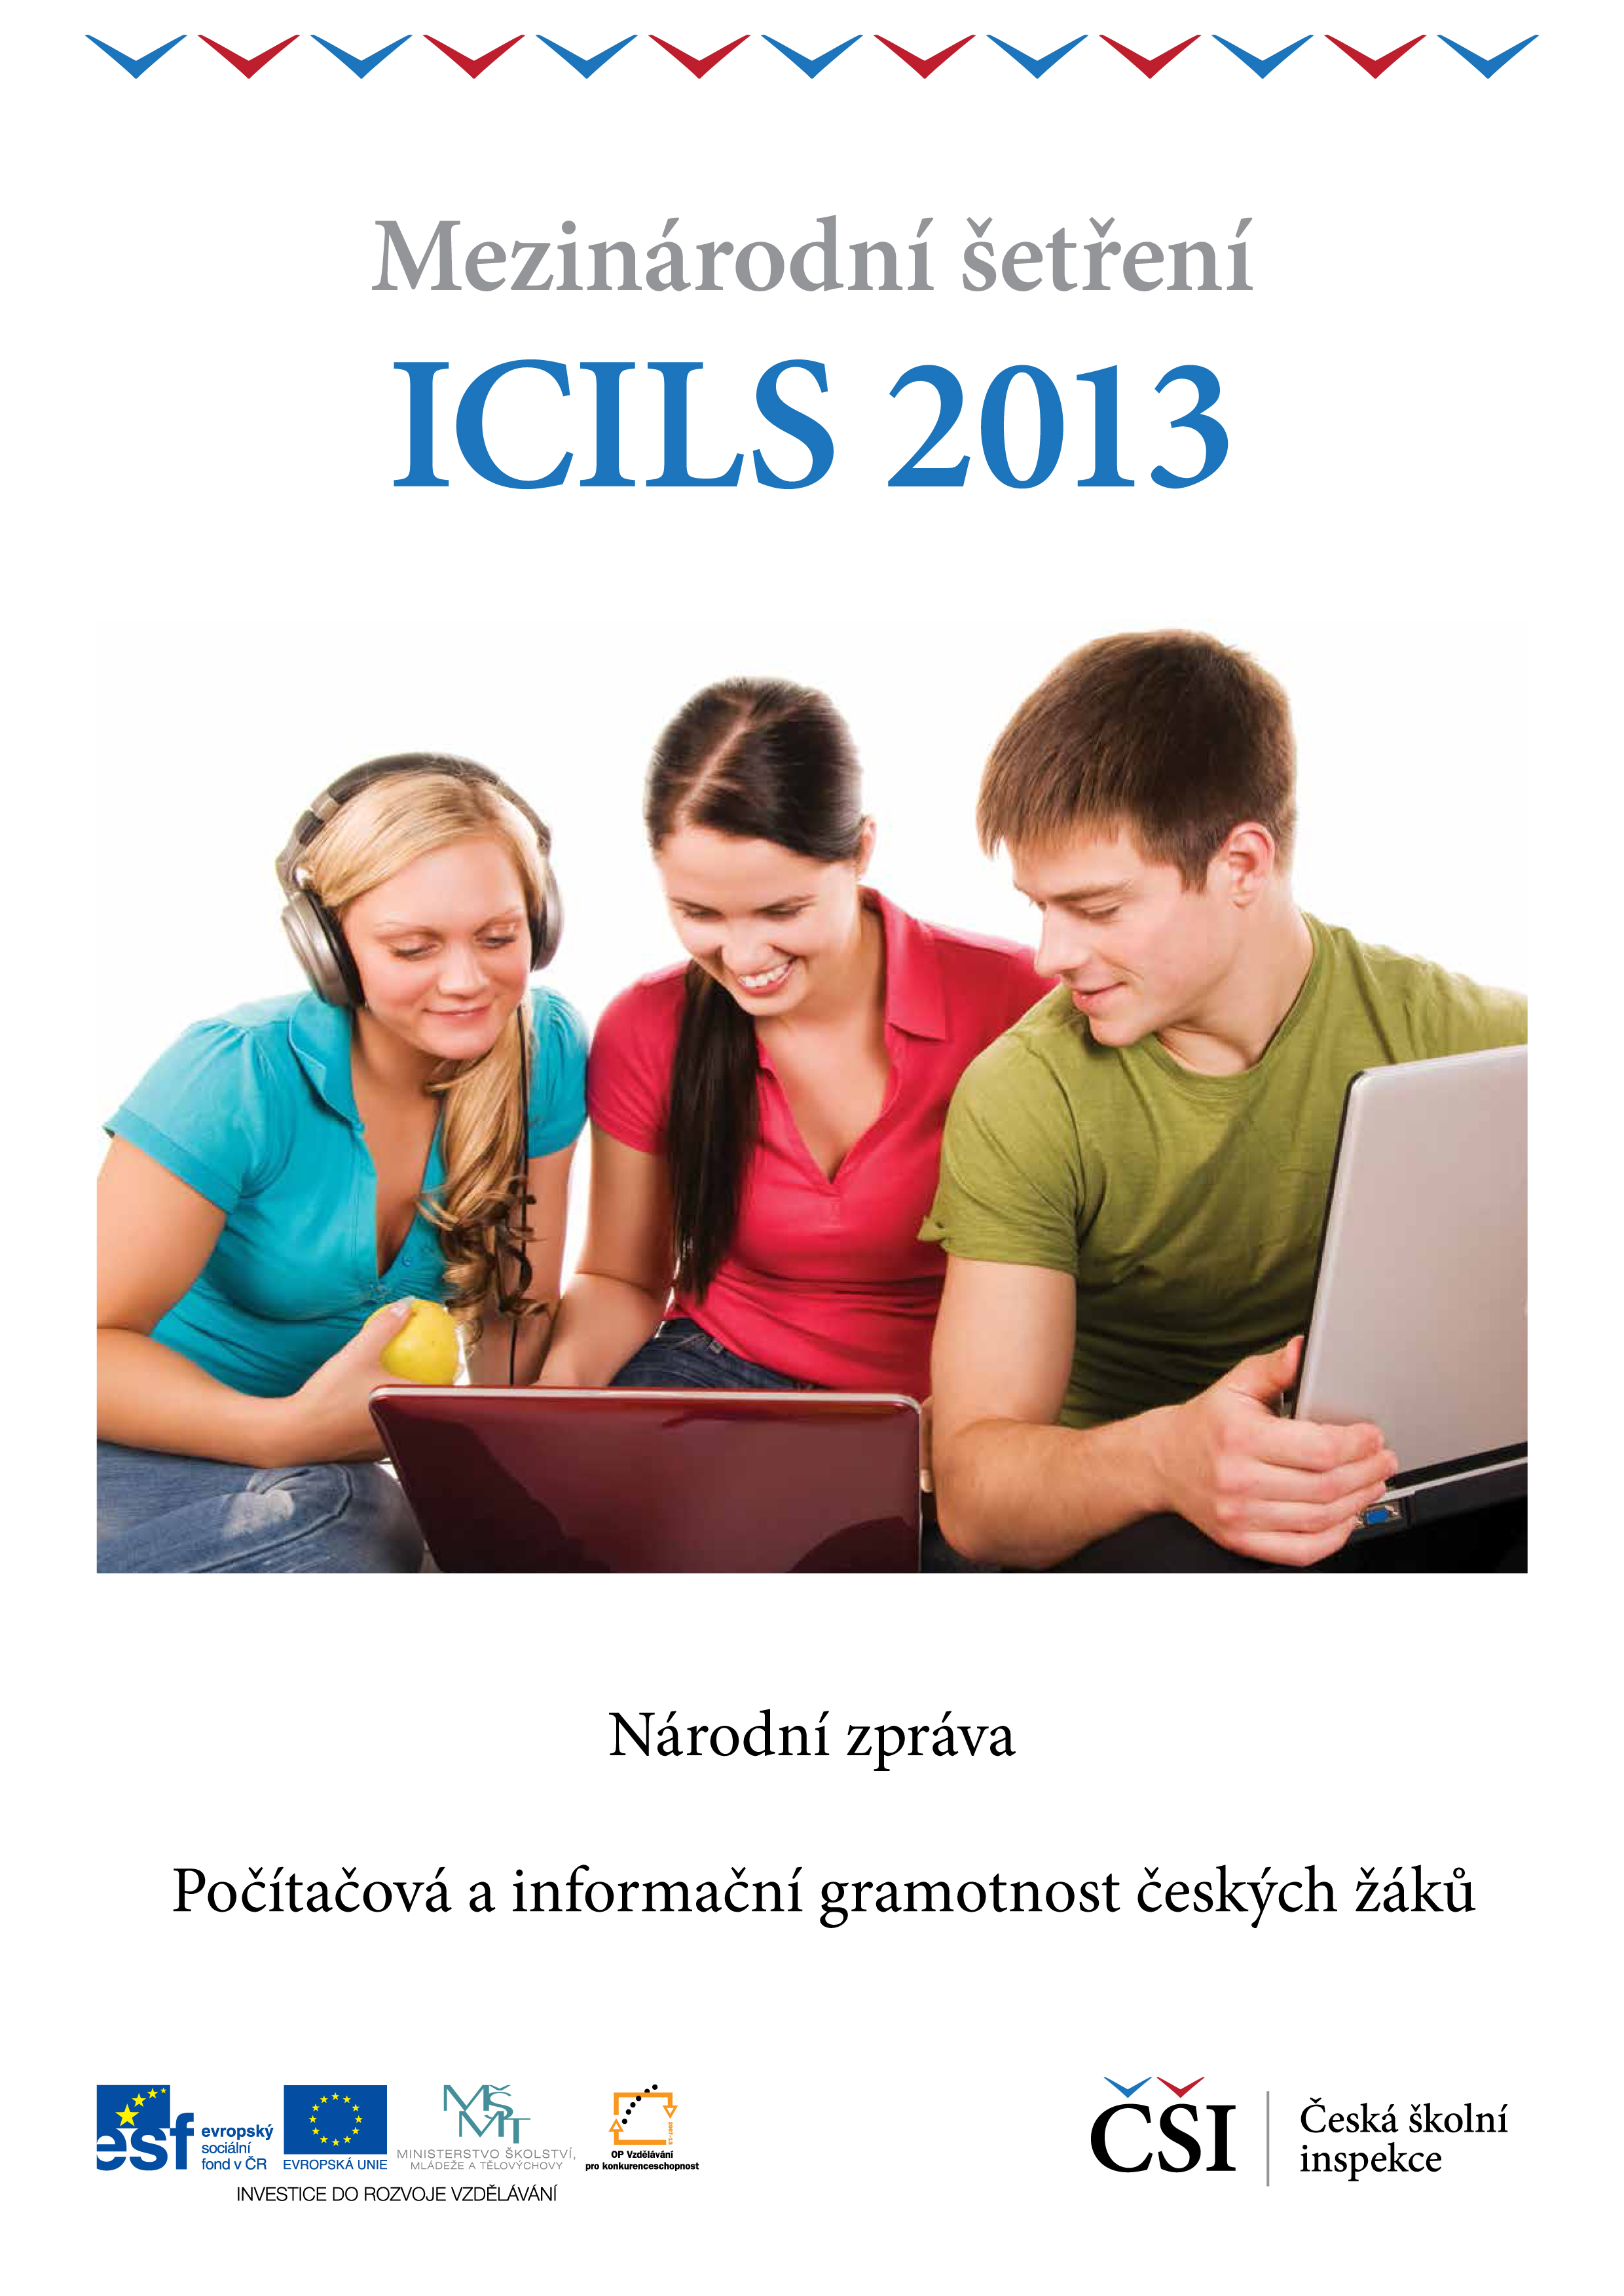 Česká školní inspekce zveřejňuje výsledky šetření informační a počítačové gramotnosti ICILS 2013